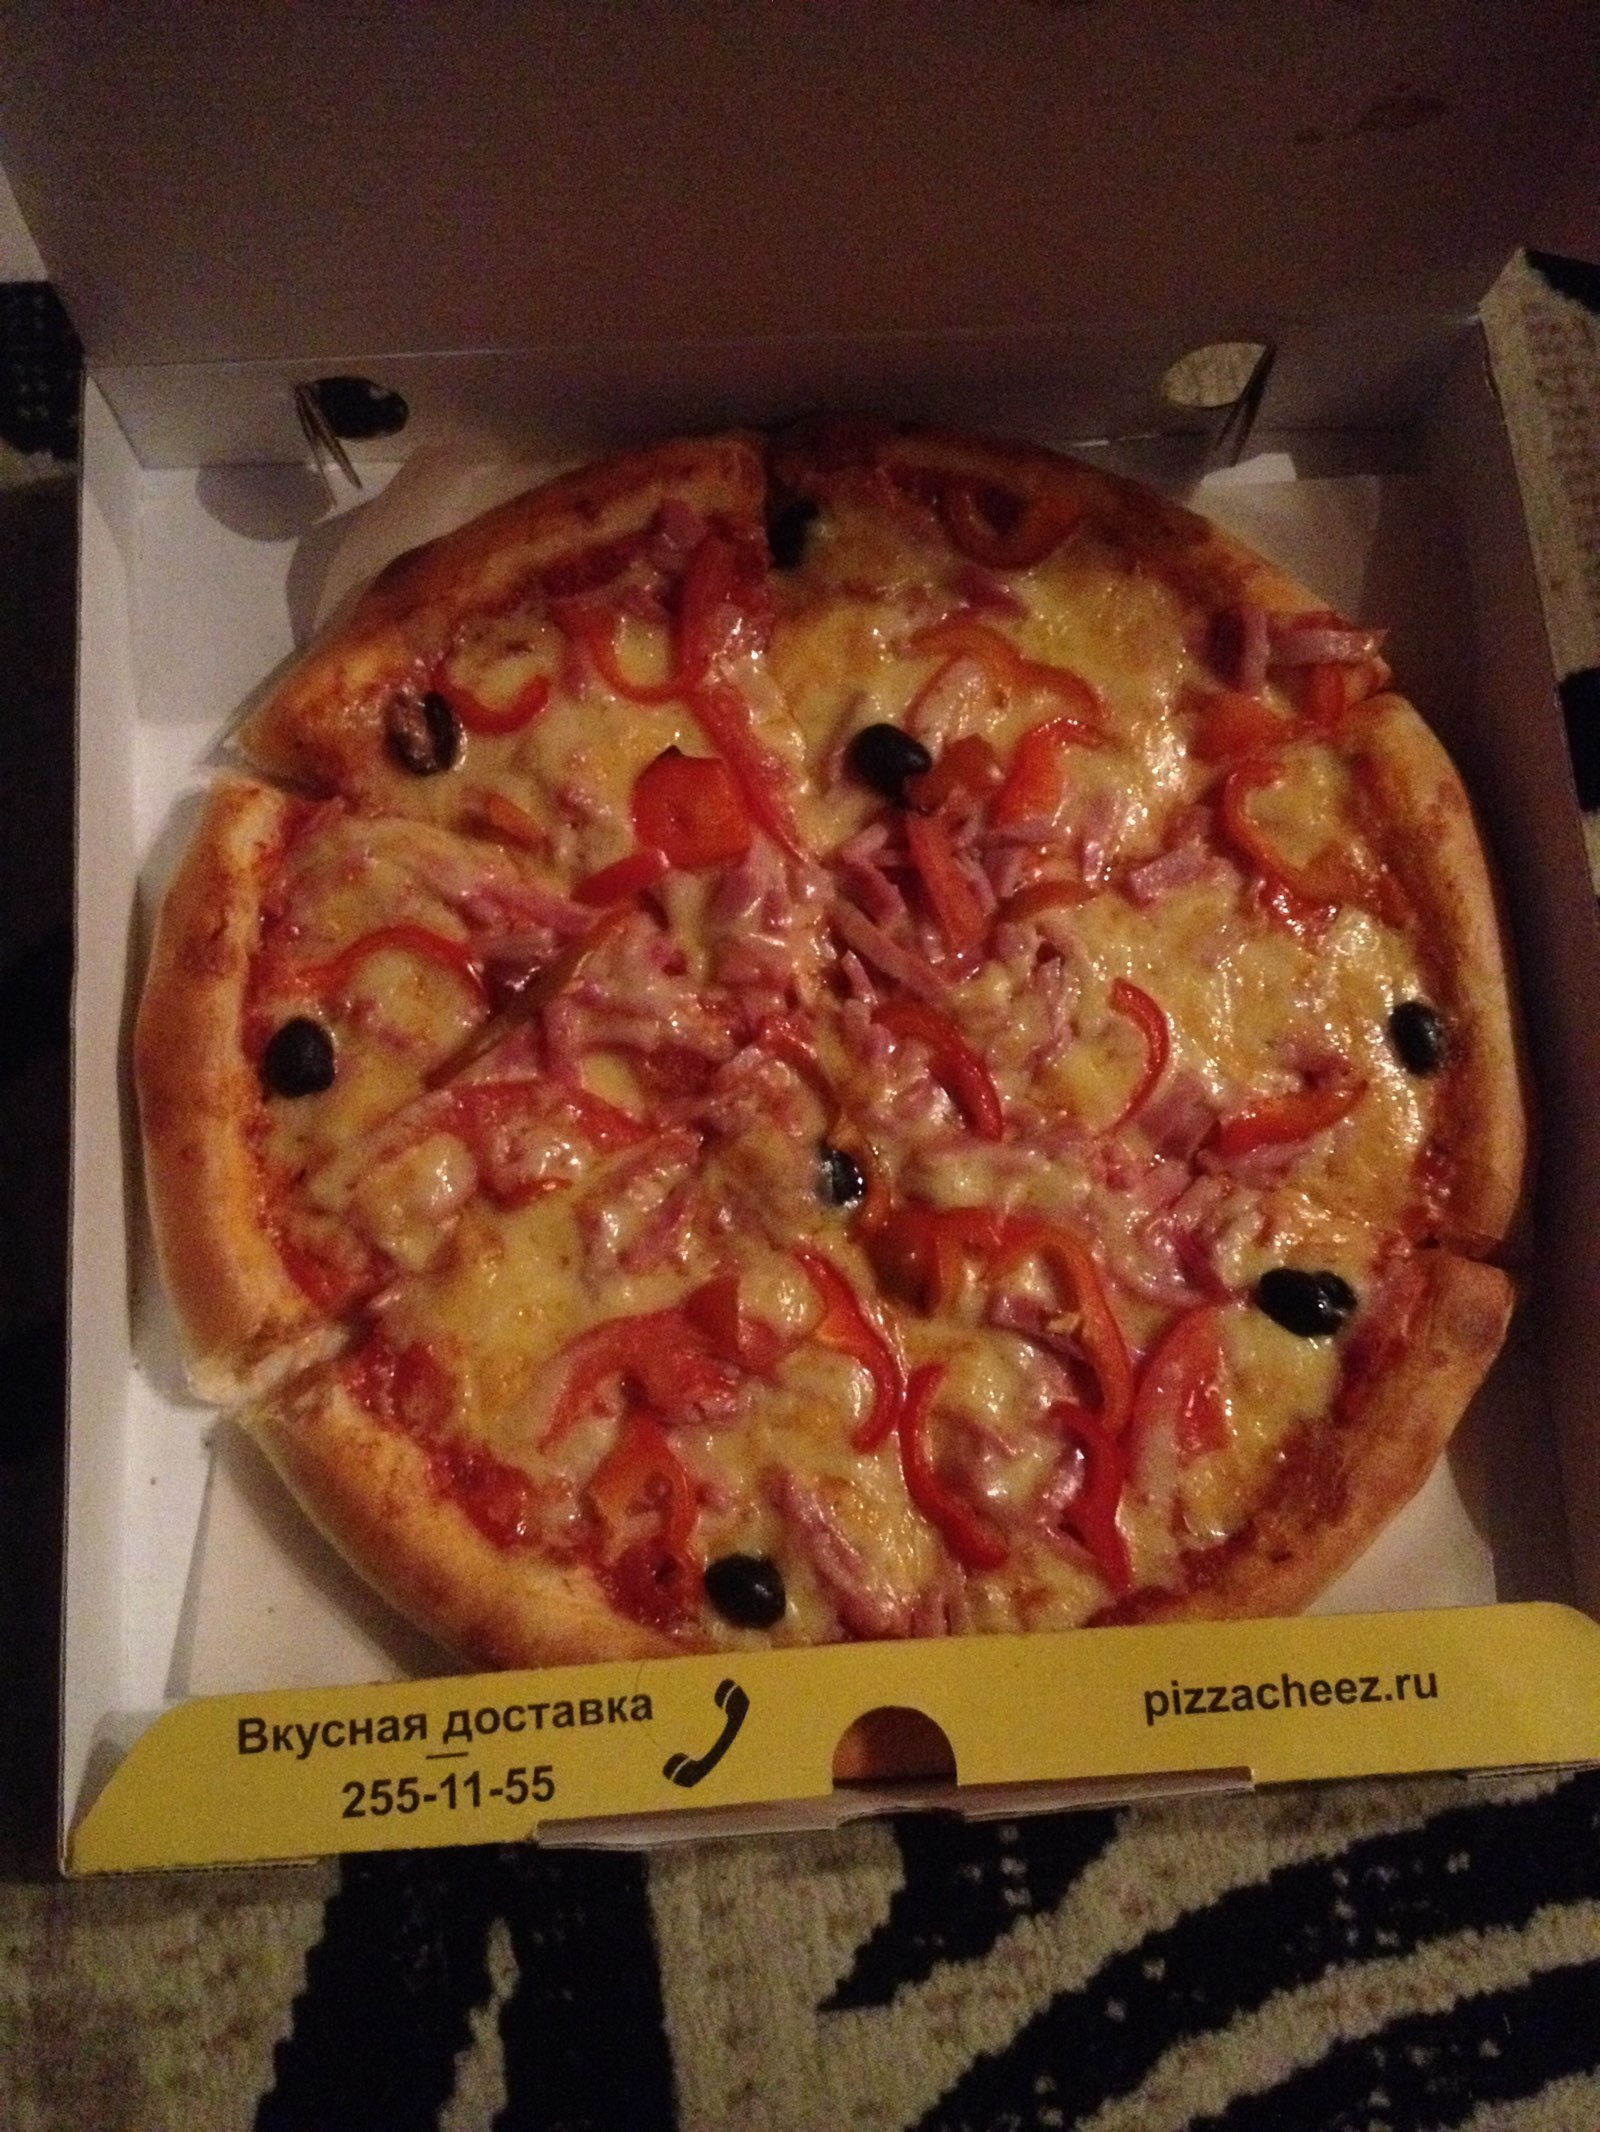 лучшая пицца в красноярске рейтинг с доставкой фото 59